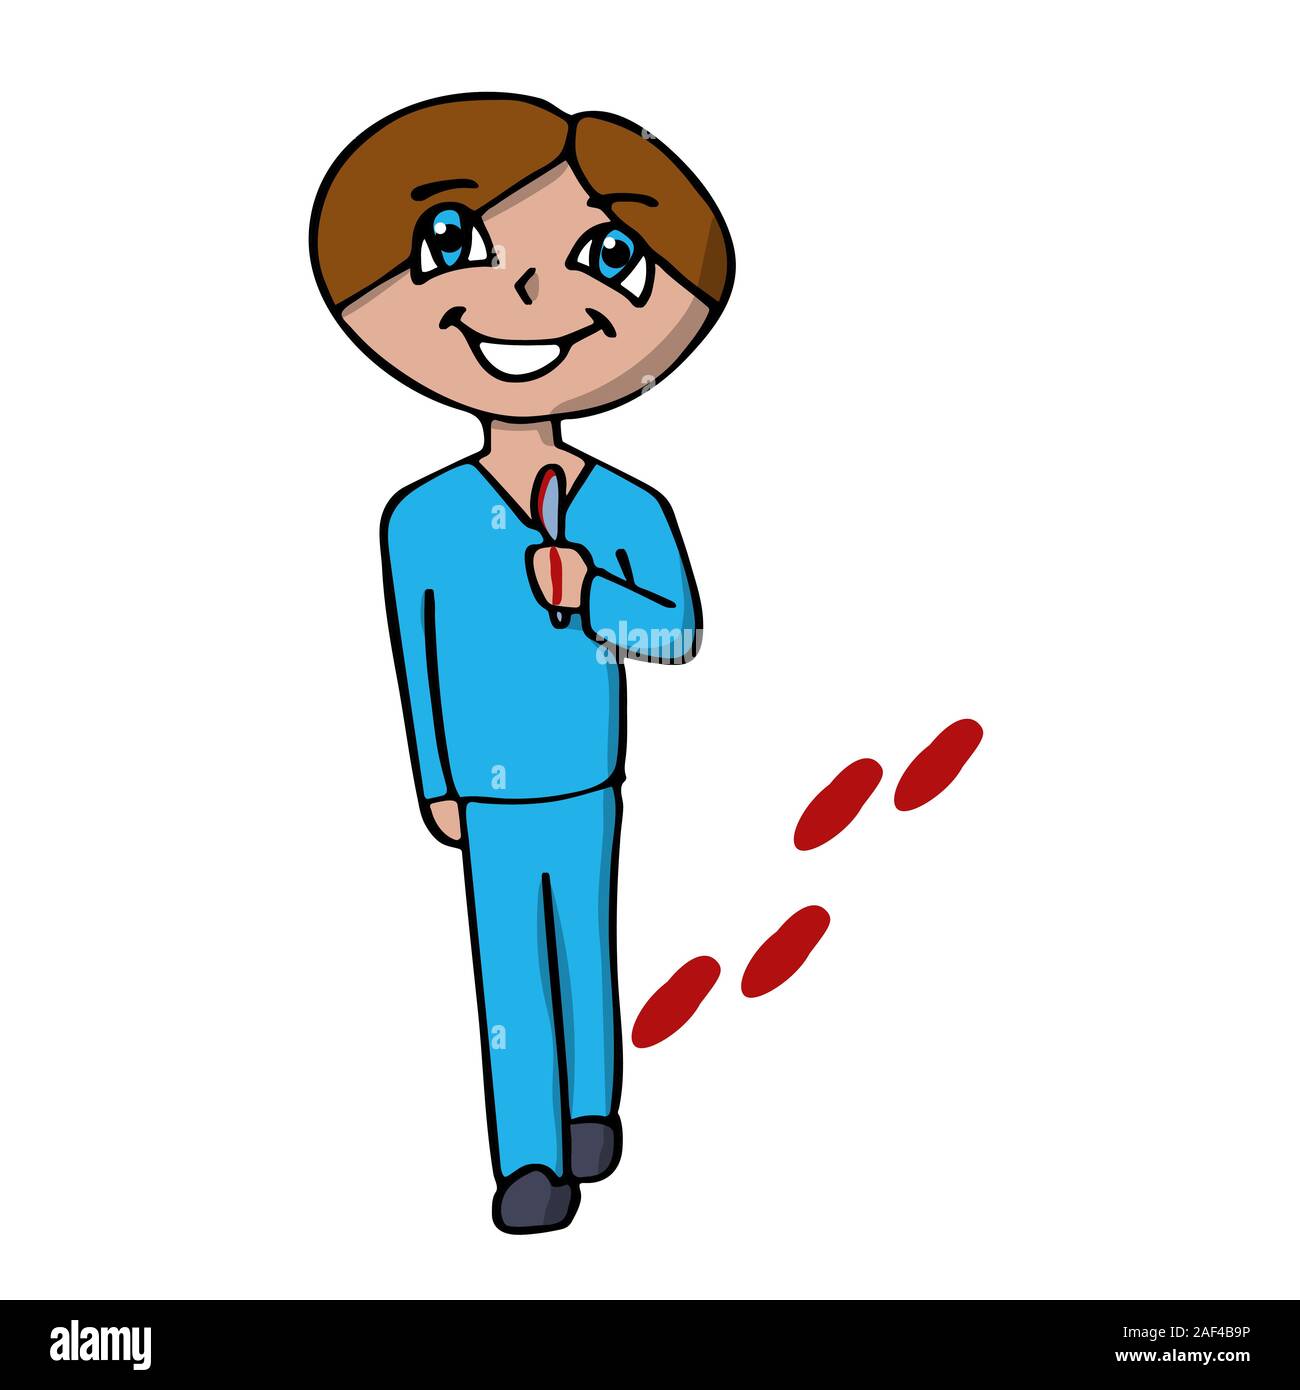 Un chirurgien creepy smiling avec un scalpel va pour une opération.. piste sanglante caricature illustration vectorielle stock isolé Illustration de Vecteur